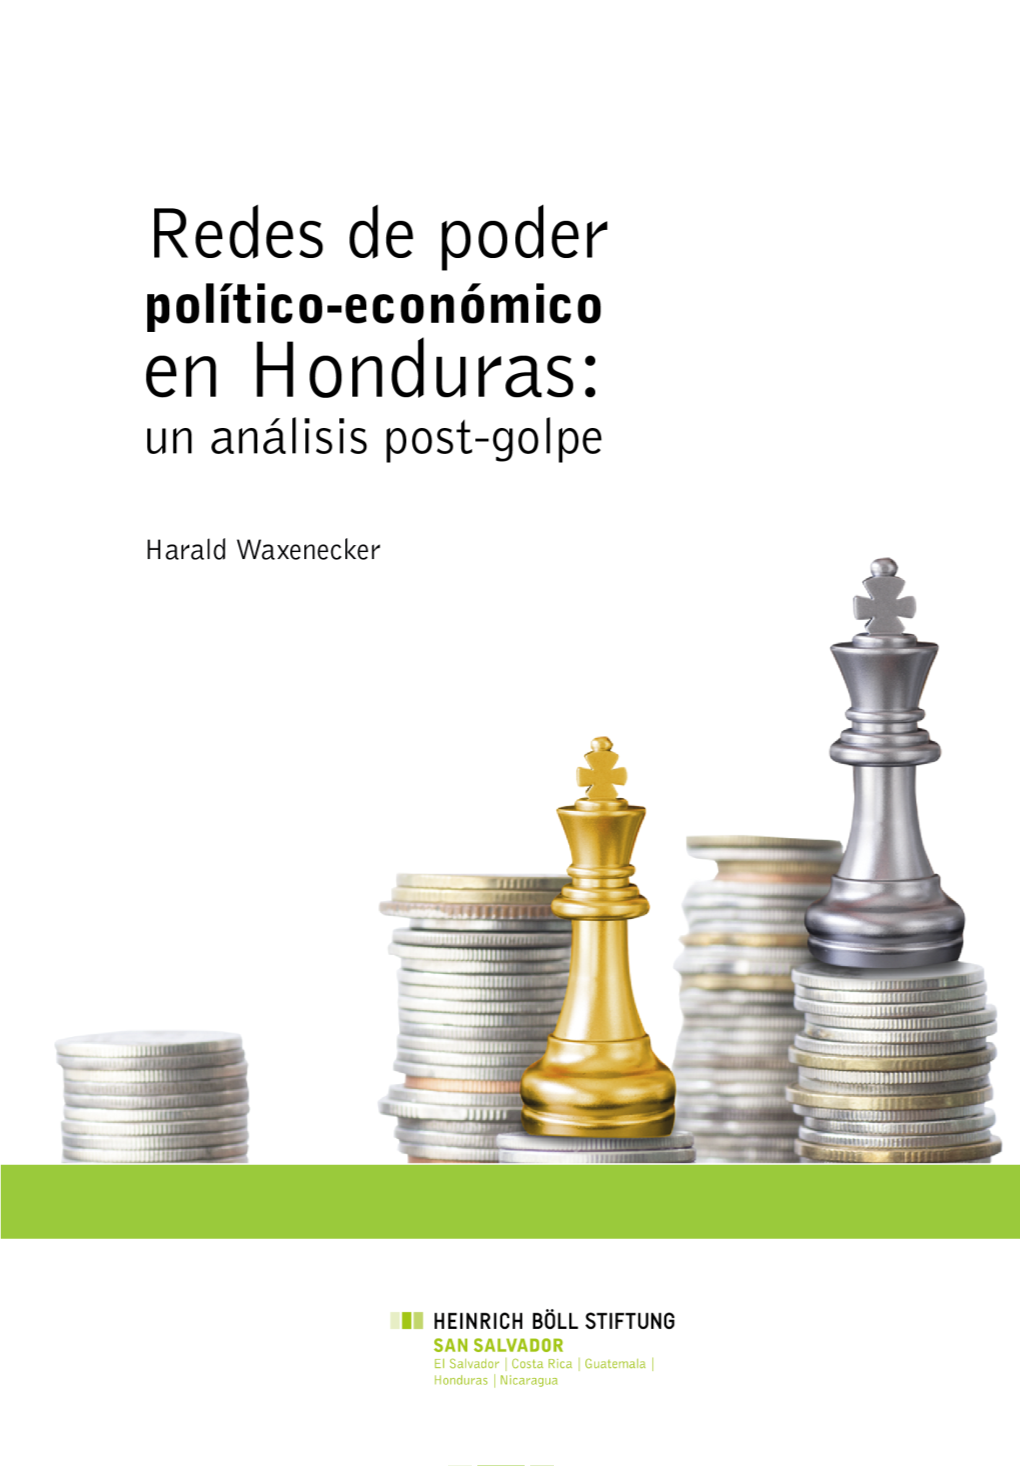 Redes De Poder Político-Económico En Honduras: Un Análisis Post-Golpe Autor: Harald Waxenecker